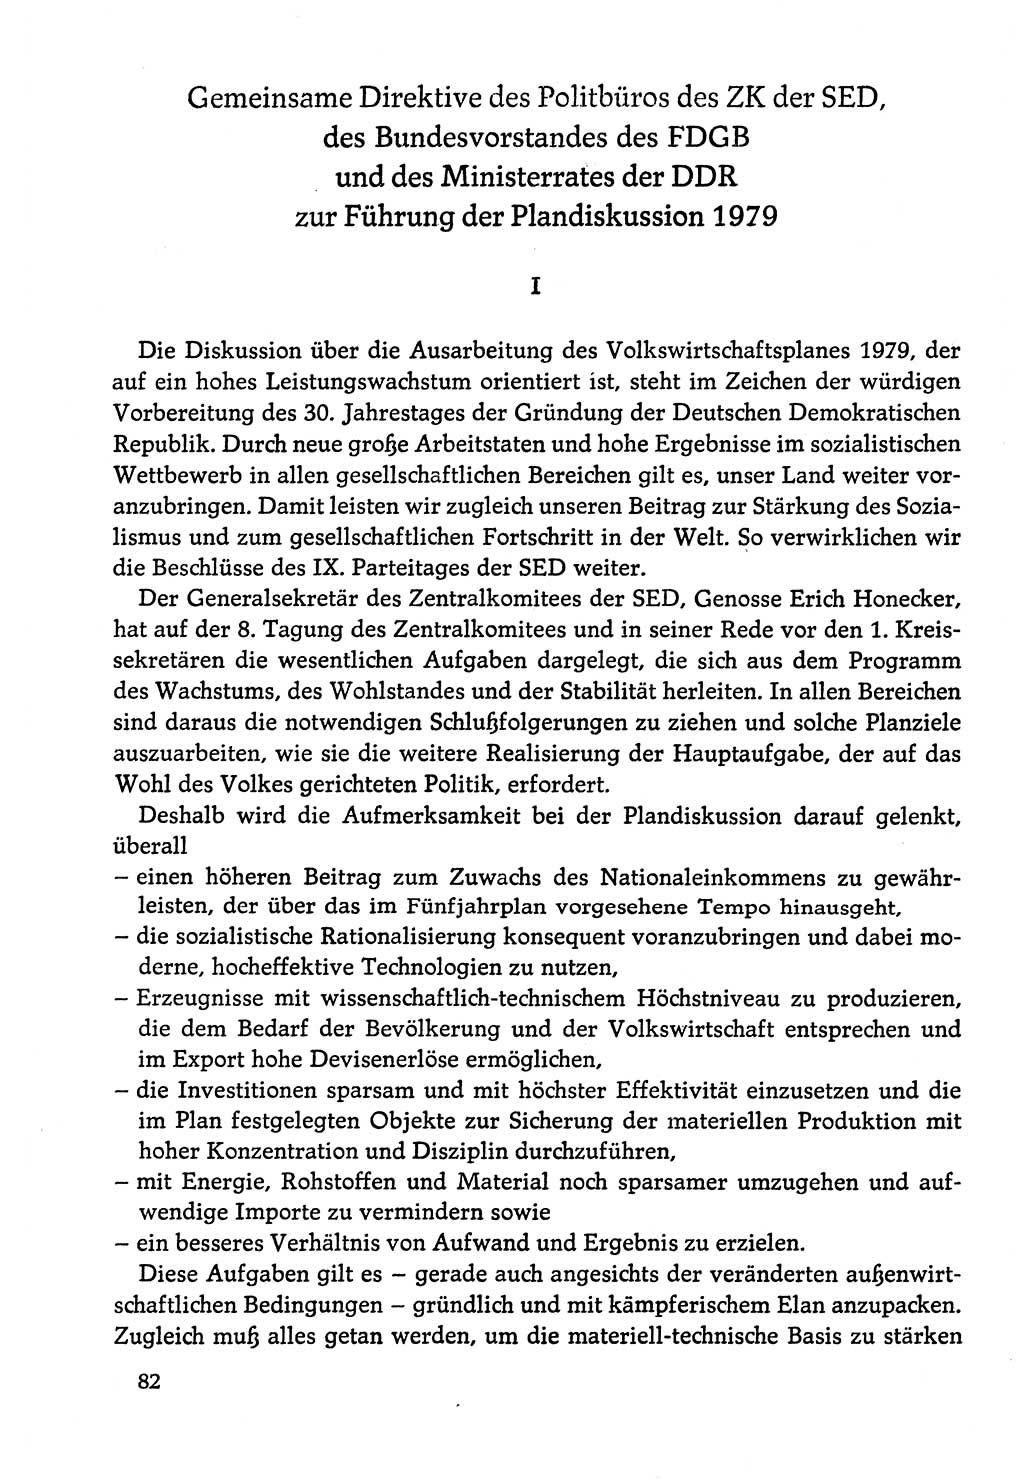 Dokumente der Sozialistischen Einheitspartei Deutschlands (SED) [Deutsche Demokratische Republik (DDR)] 1978-1979, Seite 82 (Dok. SED DDR 1978-1979, S. 82)